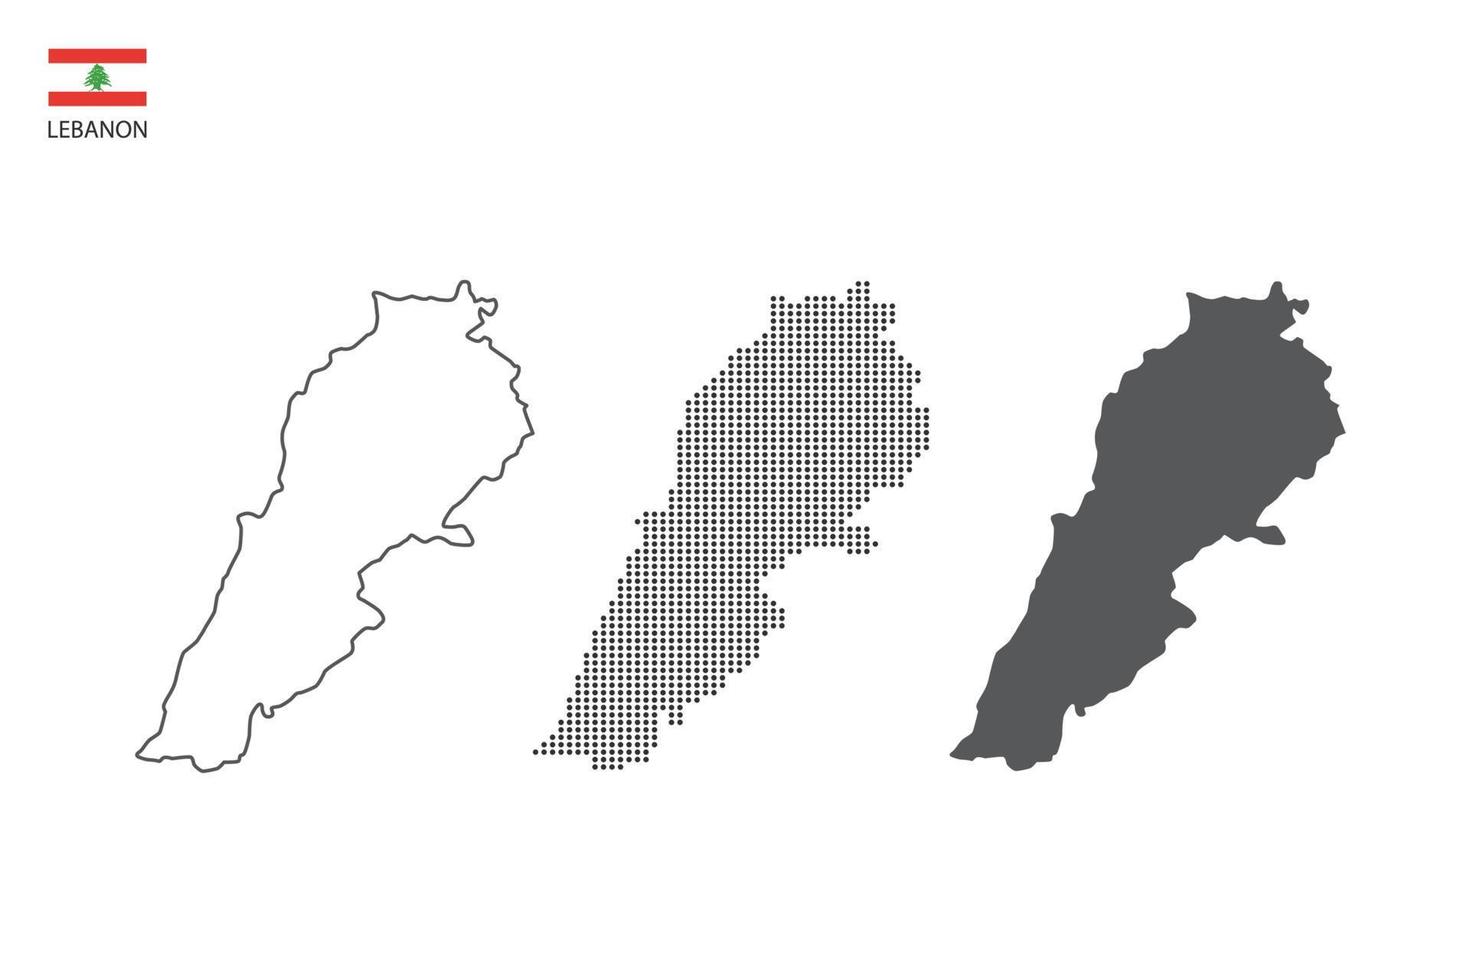 3 versiones del vector de la ciudad del mapa de Líbano por estilo de simplicidad de contorno negro delgado, estilo de punto negro y estilo de sombra oscura. todo en el fondo blanco.